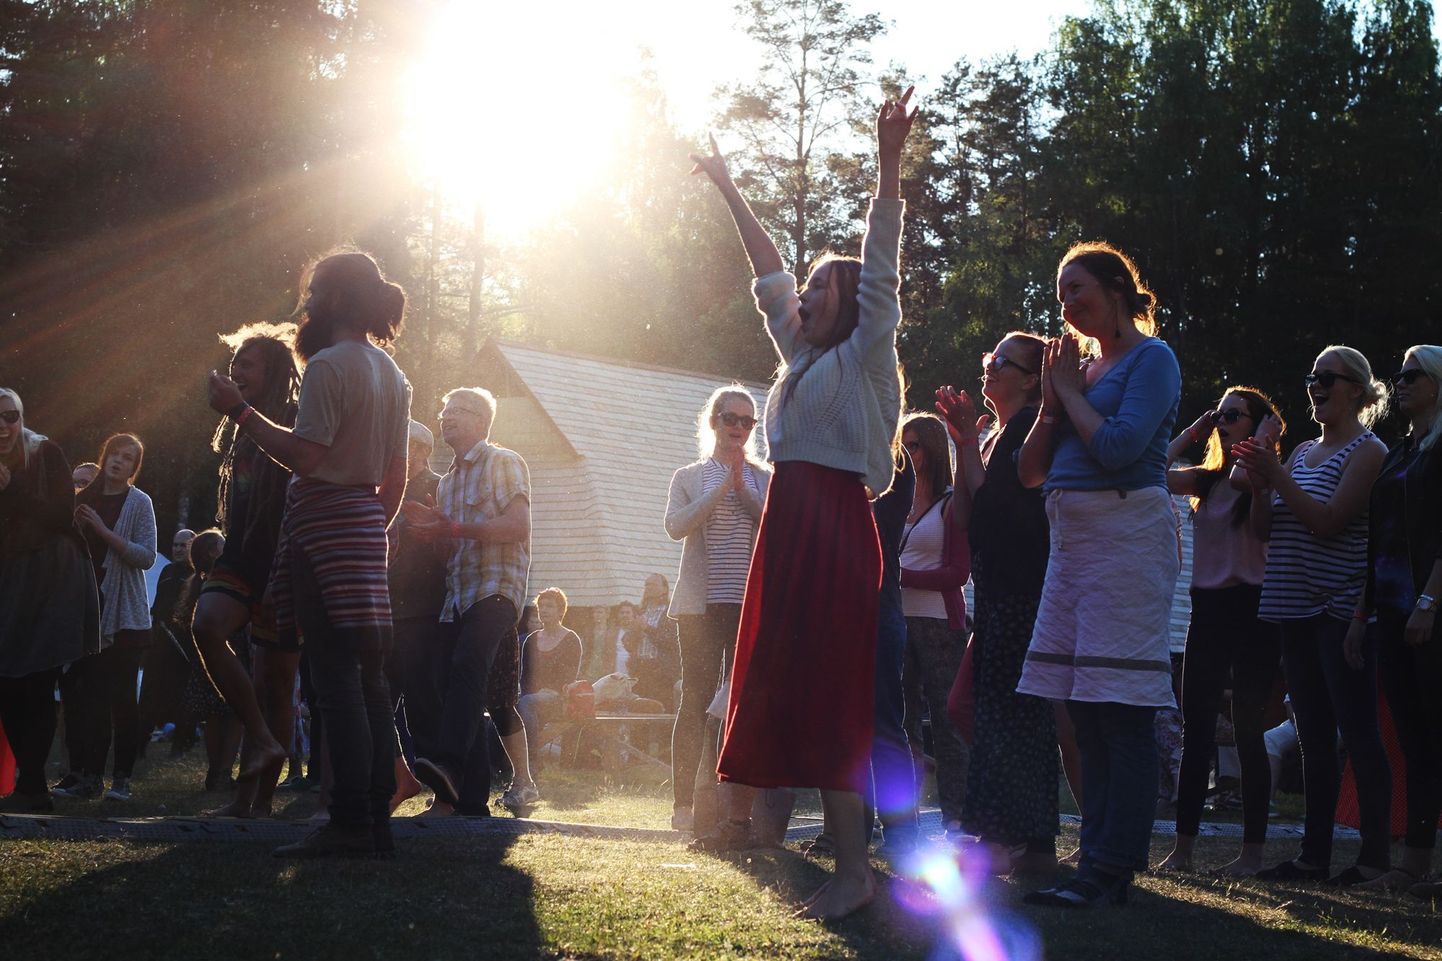 Seto Folk toimub 16.-18. juunini Värskas